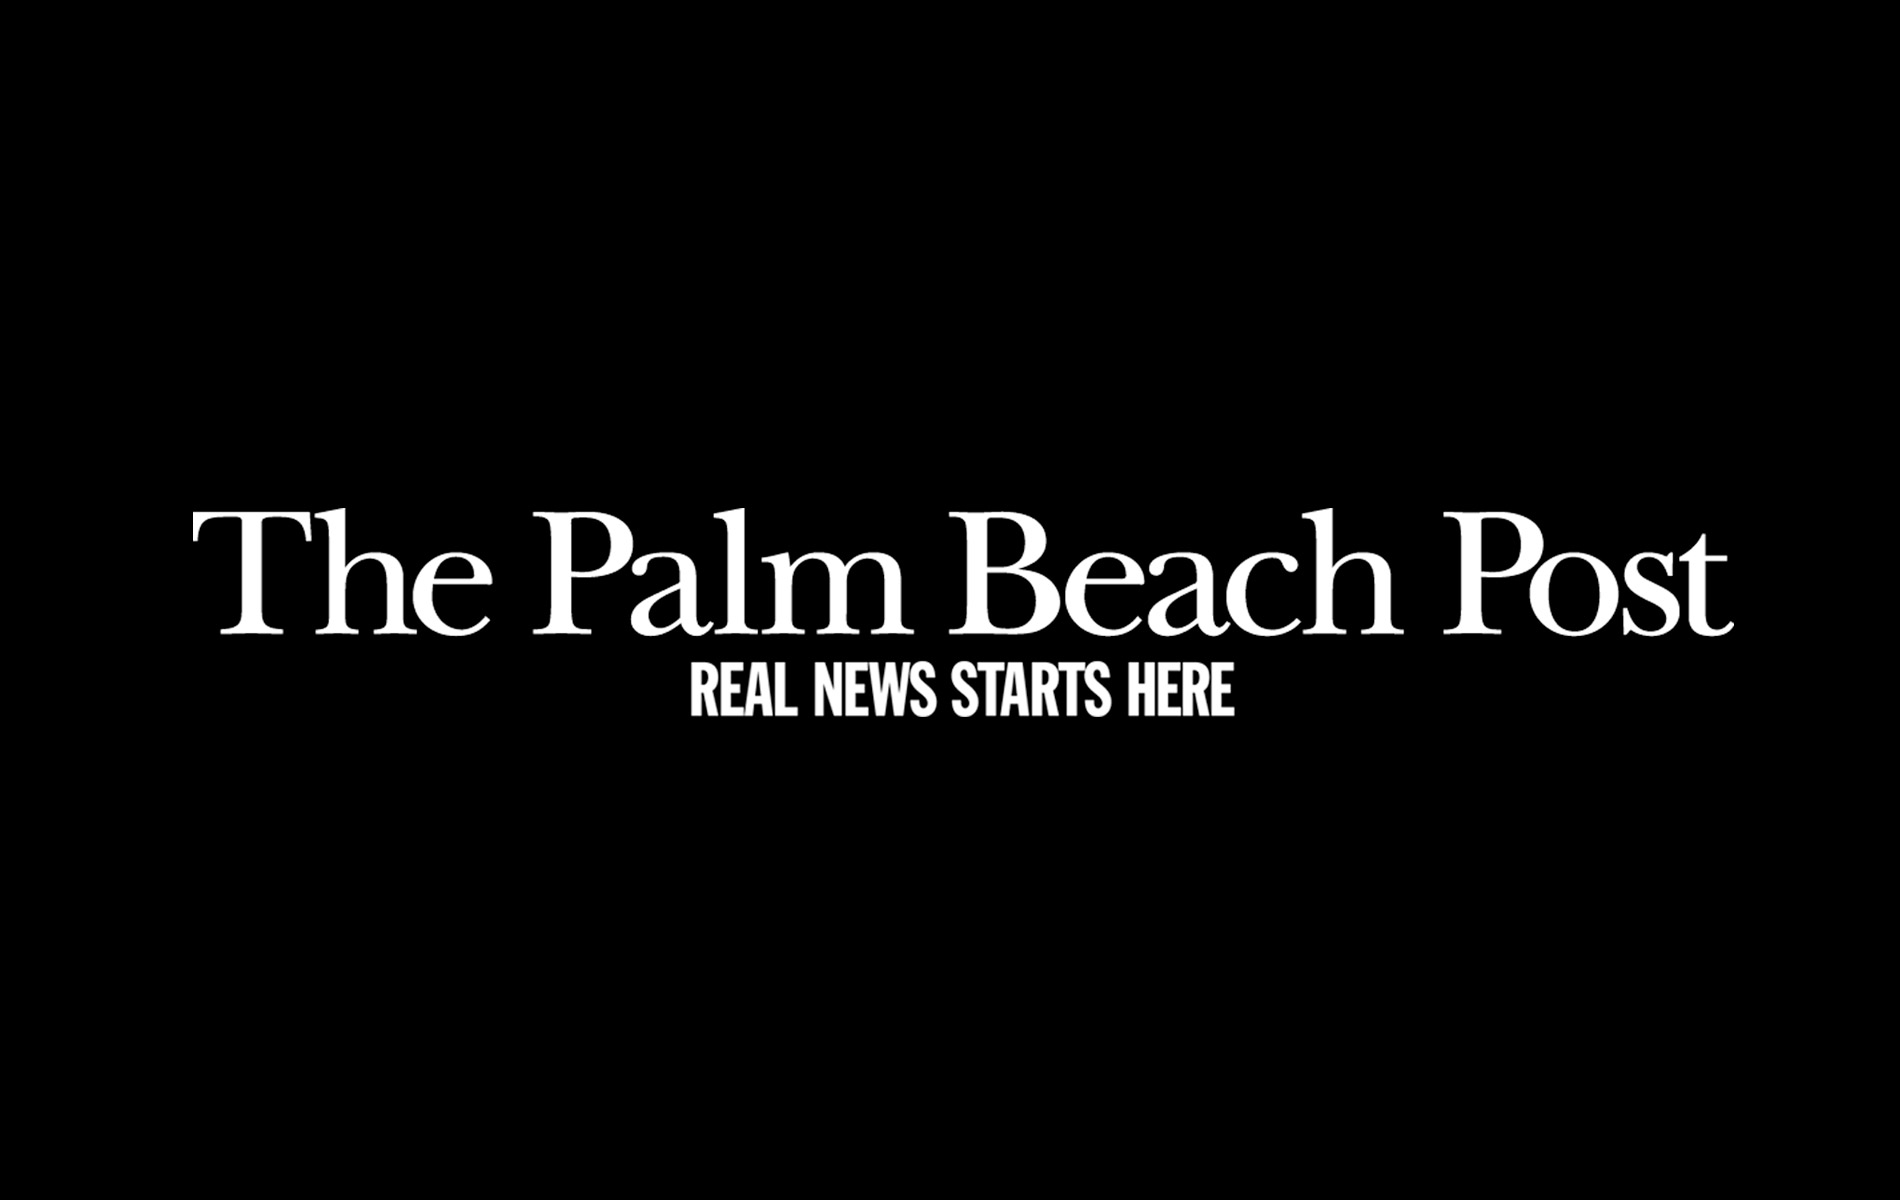 The Palm Beach Post logo